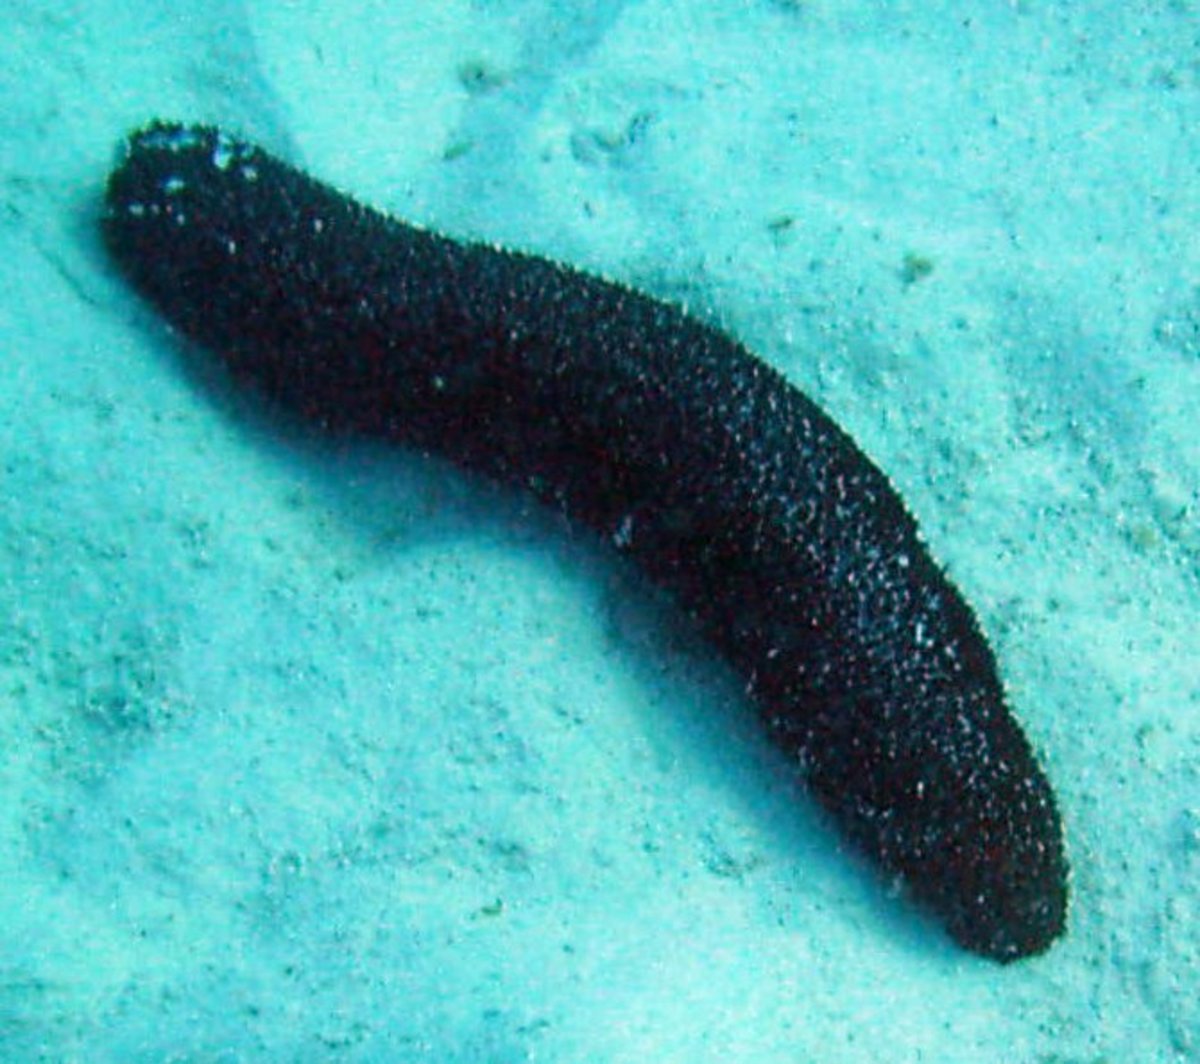 A seas cucumber is an echinoderm.  